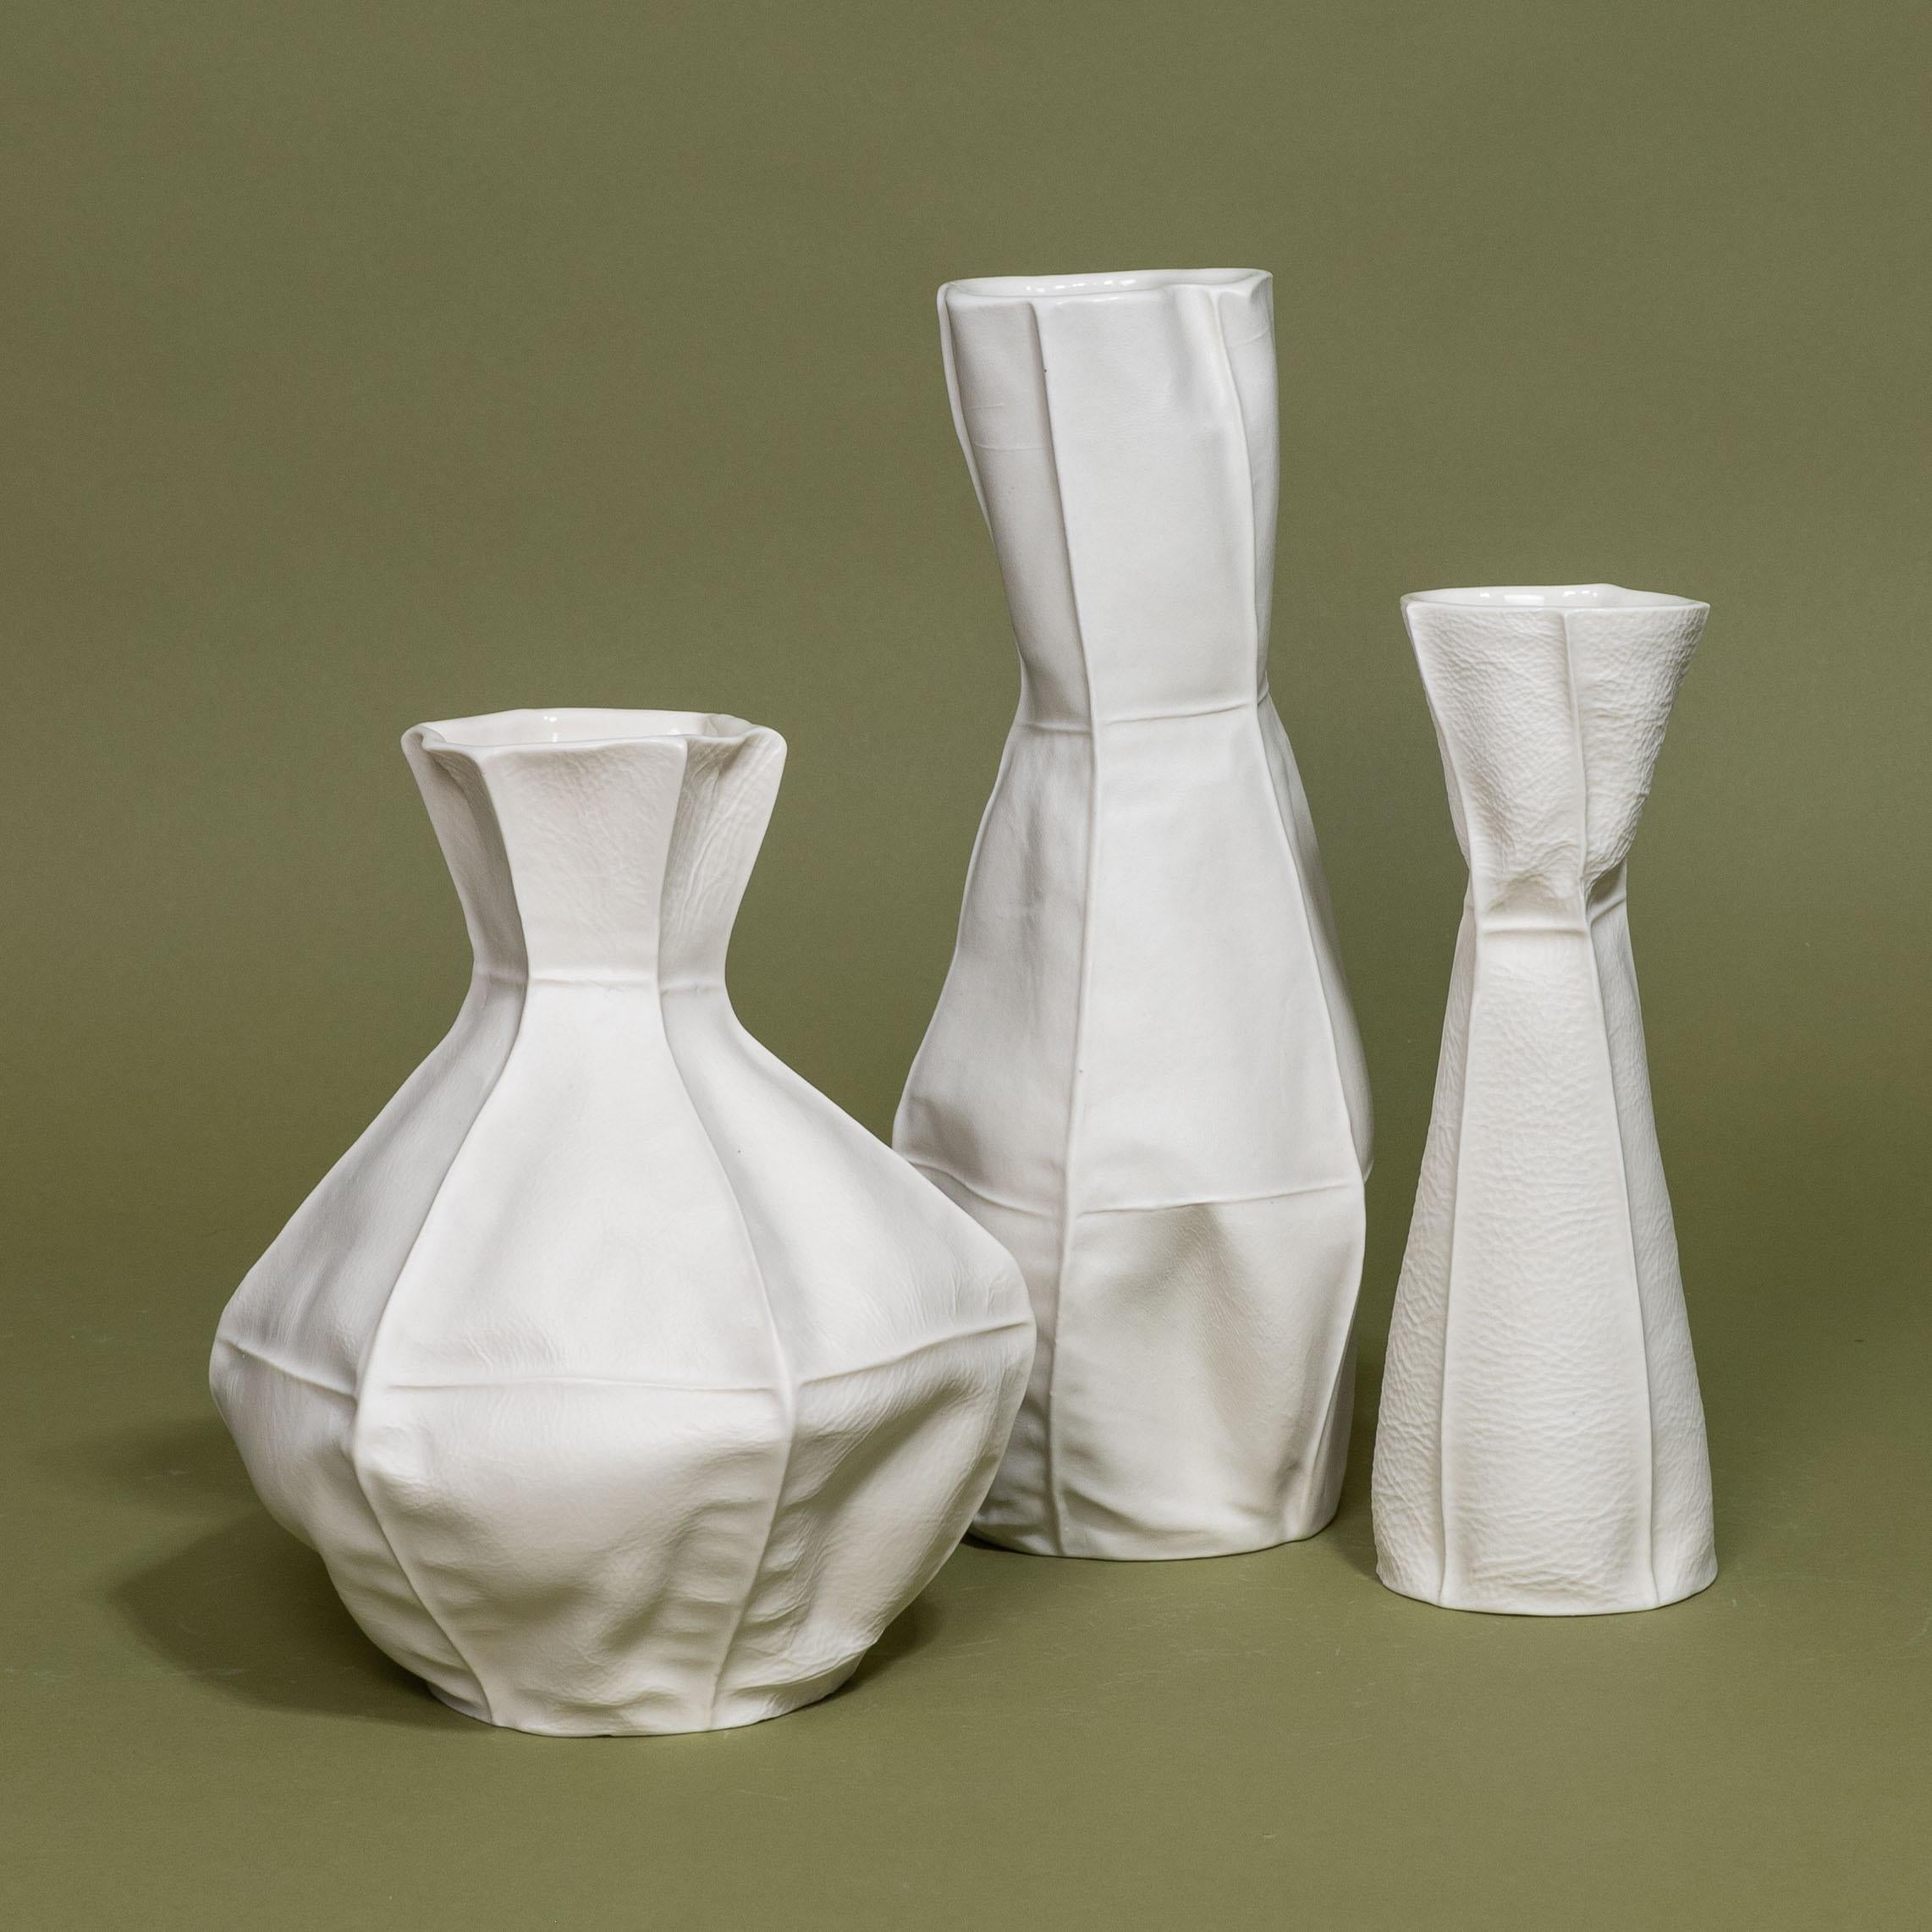 Un ensemble de trois vases Kawa en céramique blanche par Luft Tanaka Studio. Chaque article est fabriqué en coulant de la porcelaine dans des moules en cuir cousus et est véritablement unique en son genre.

En raison du processus de production,